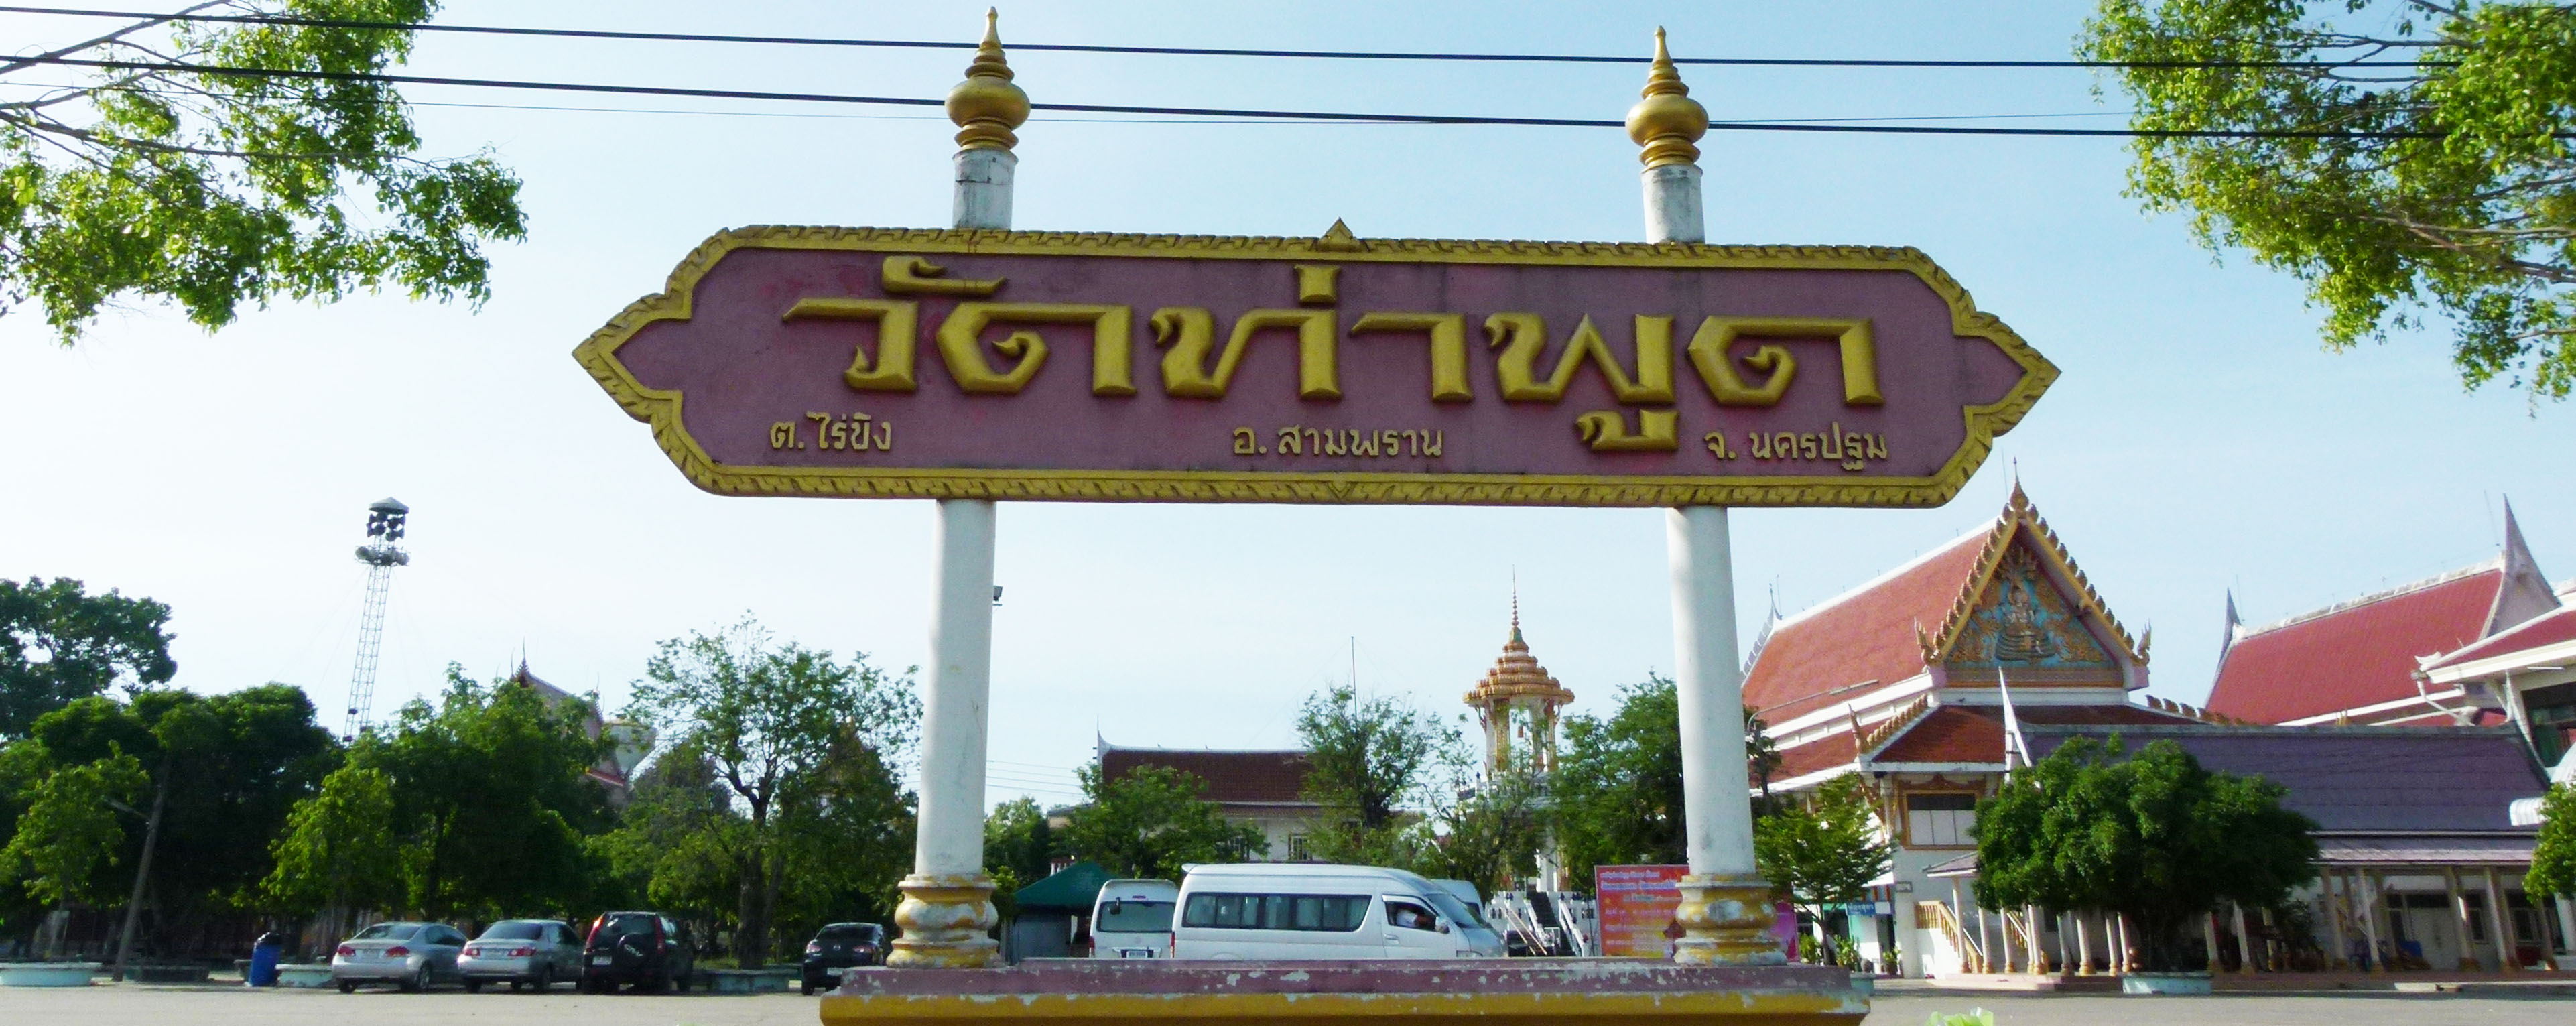 Wat Tha Phut